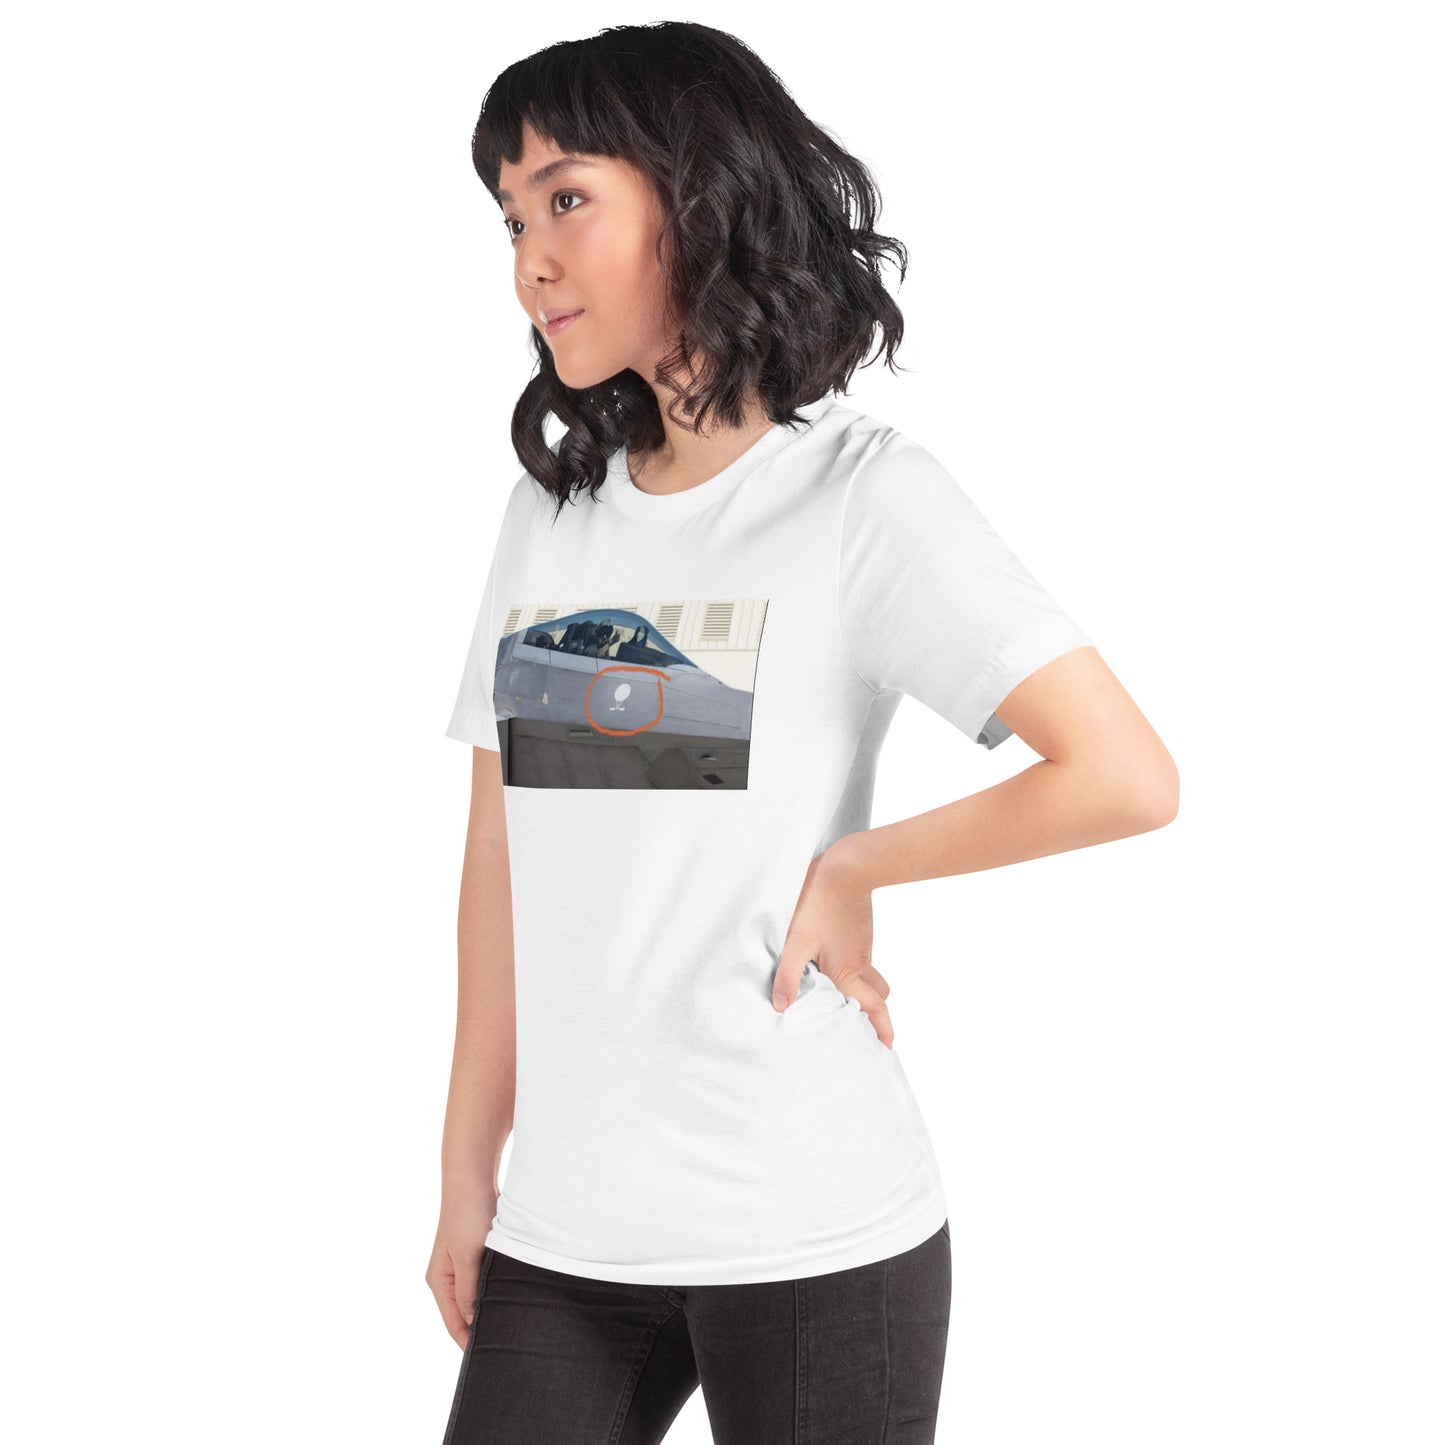 Airship Down | Unisex t-shirt